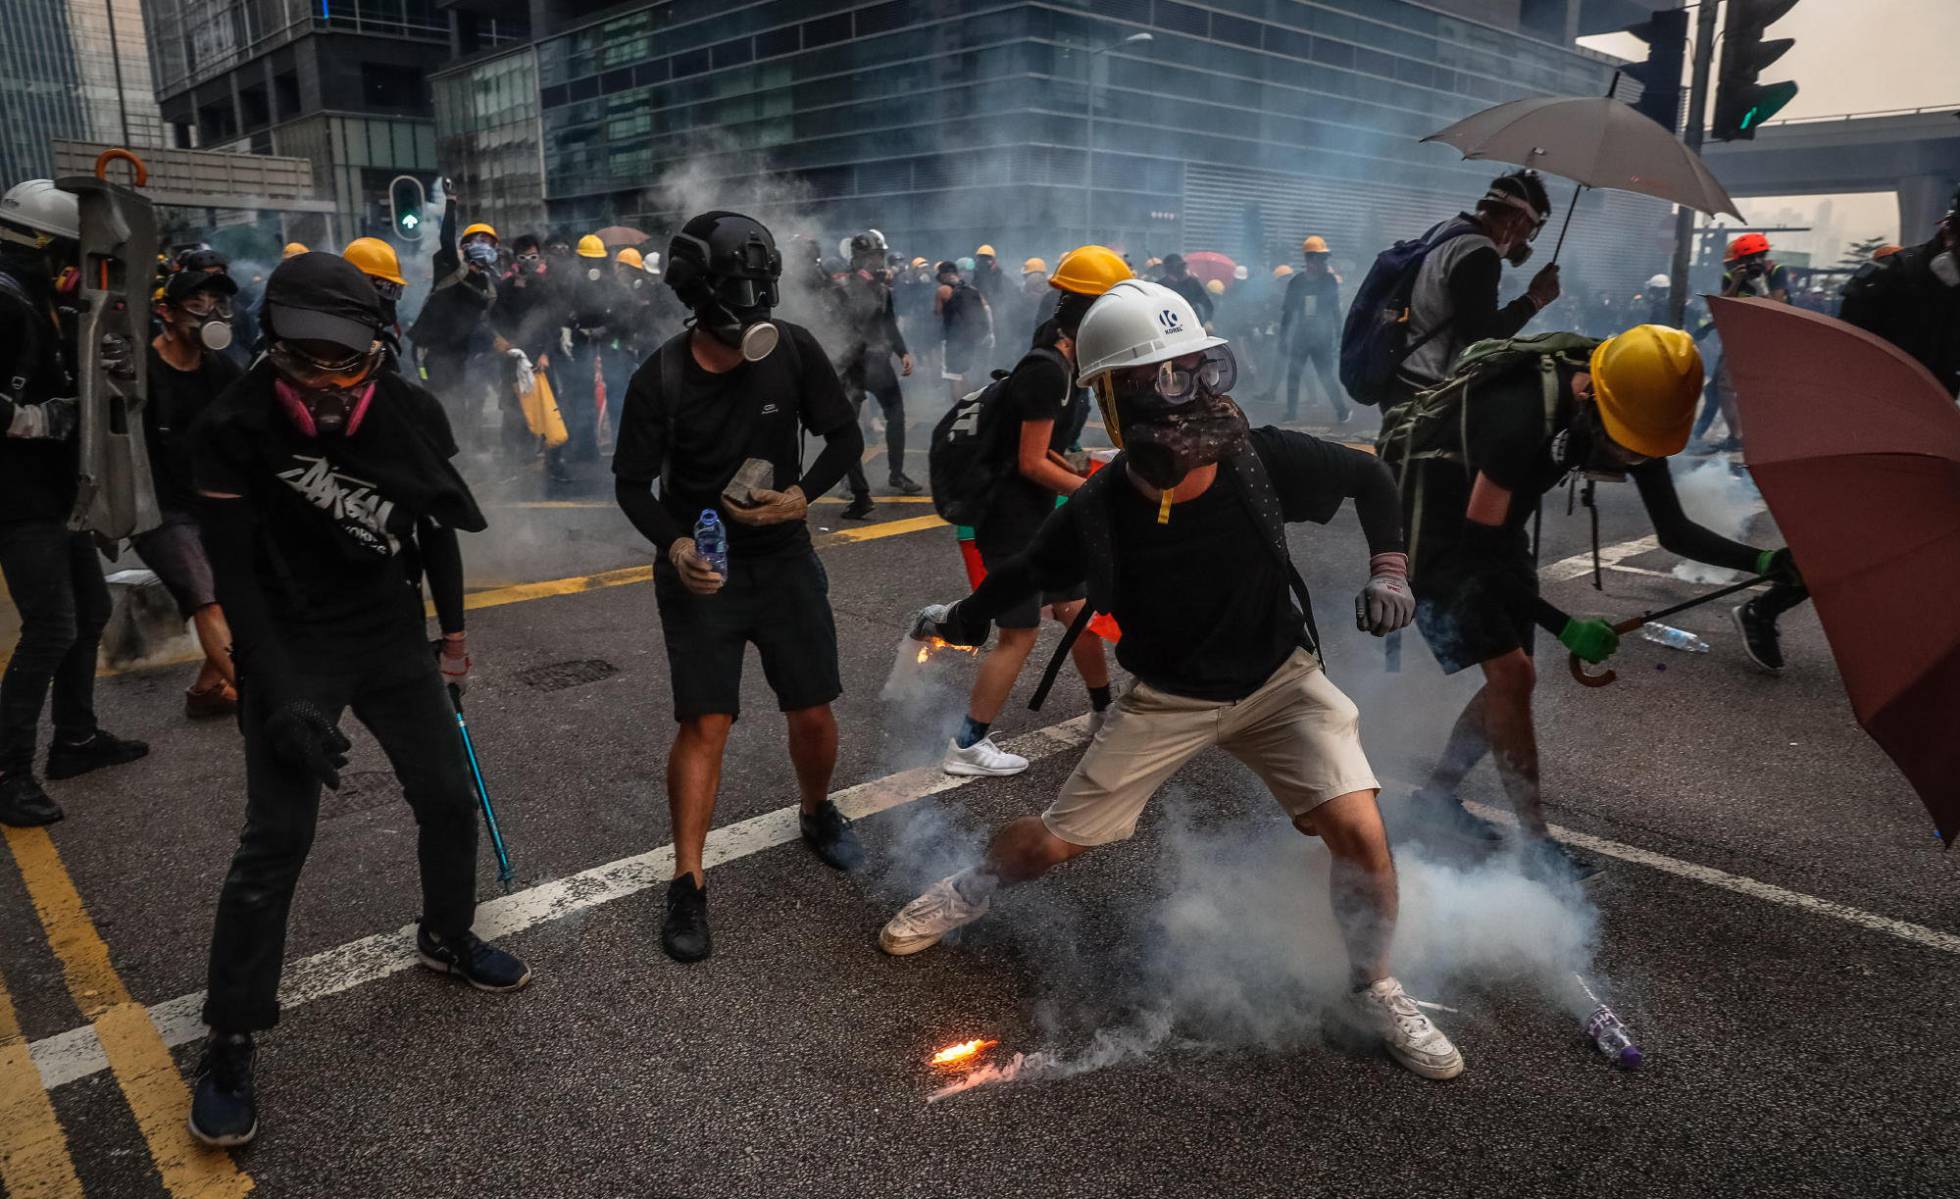 Seguridad en Hong Kong: Manifestaciones, ... - Foro China, Taiwan y Mongolia